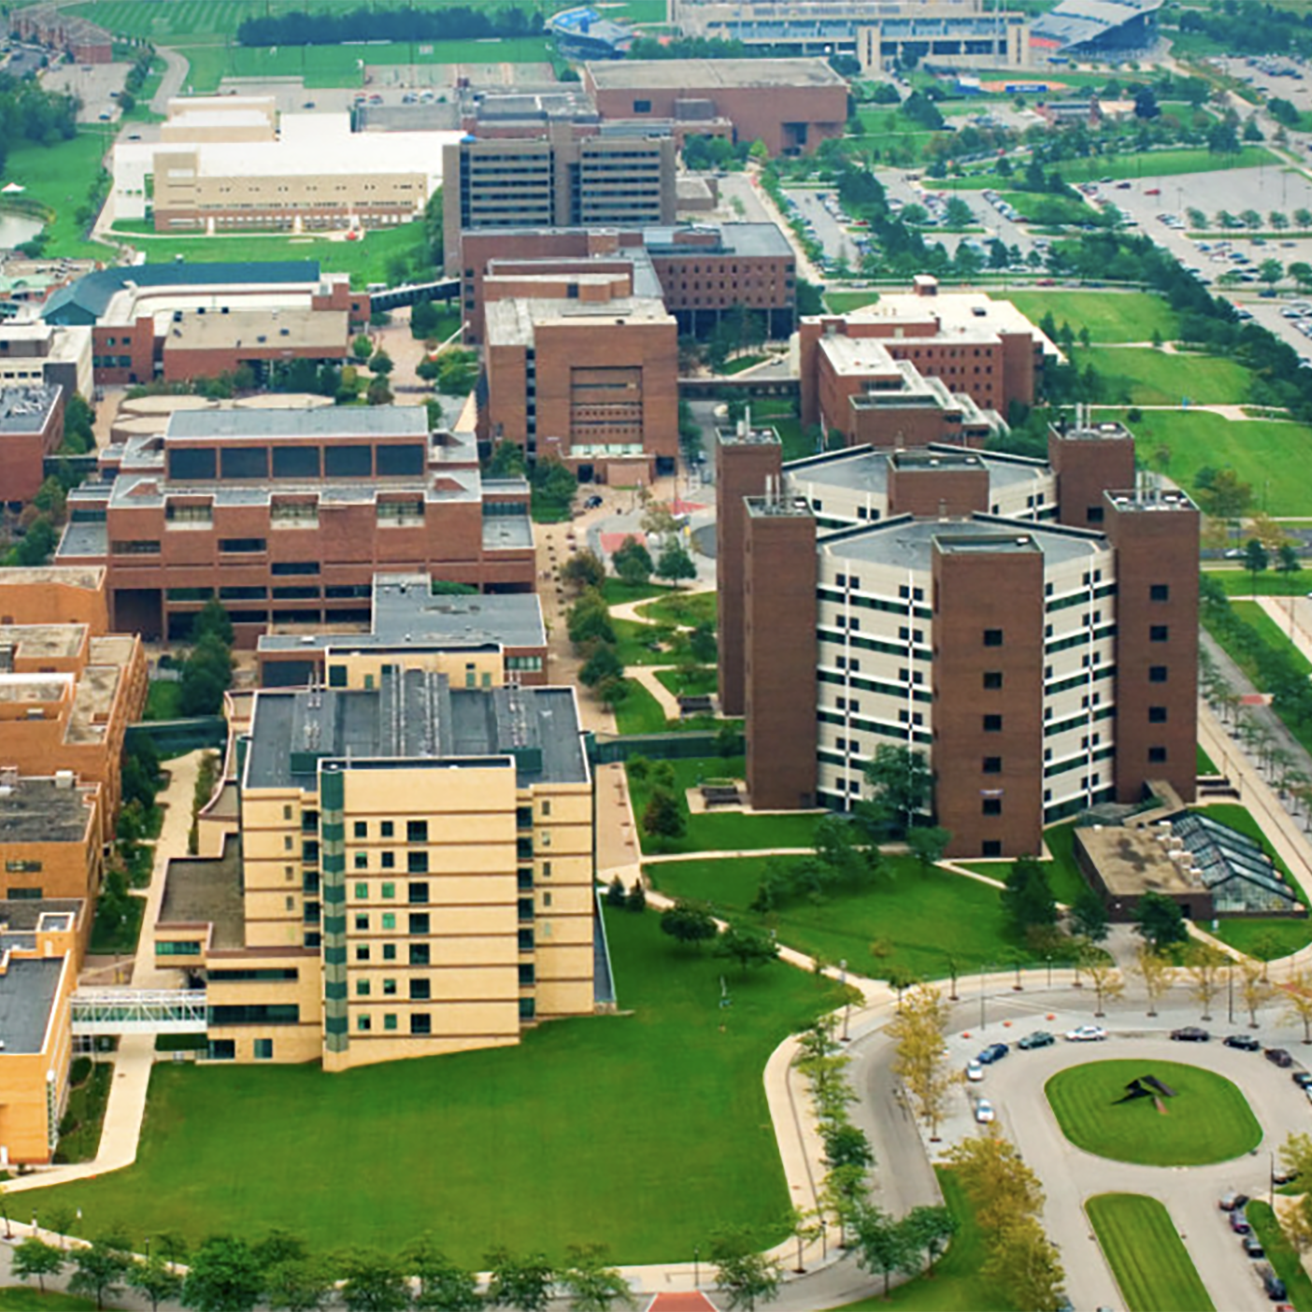 University at Buffalo campus